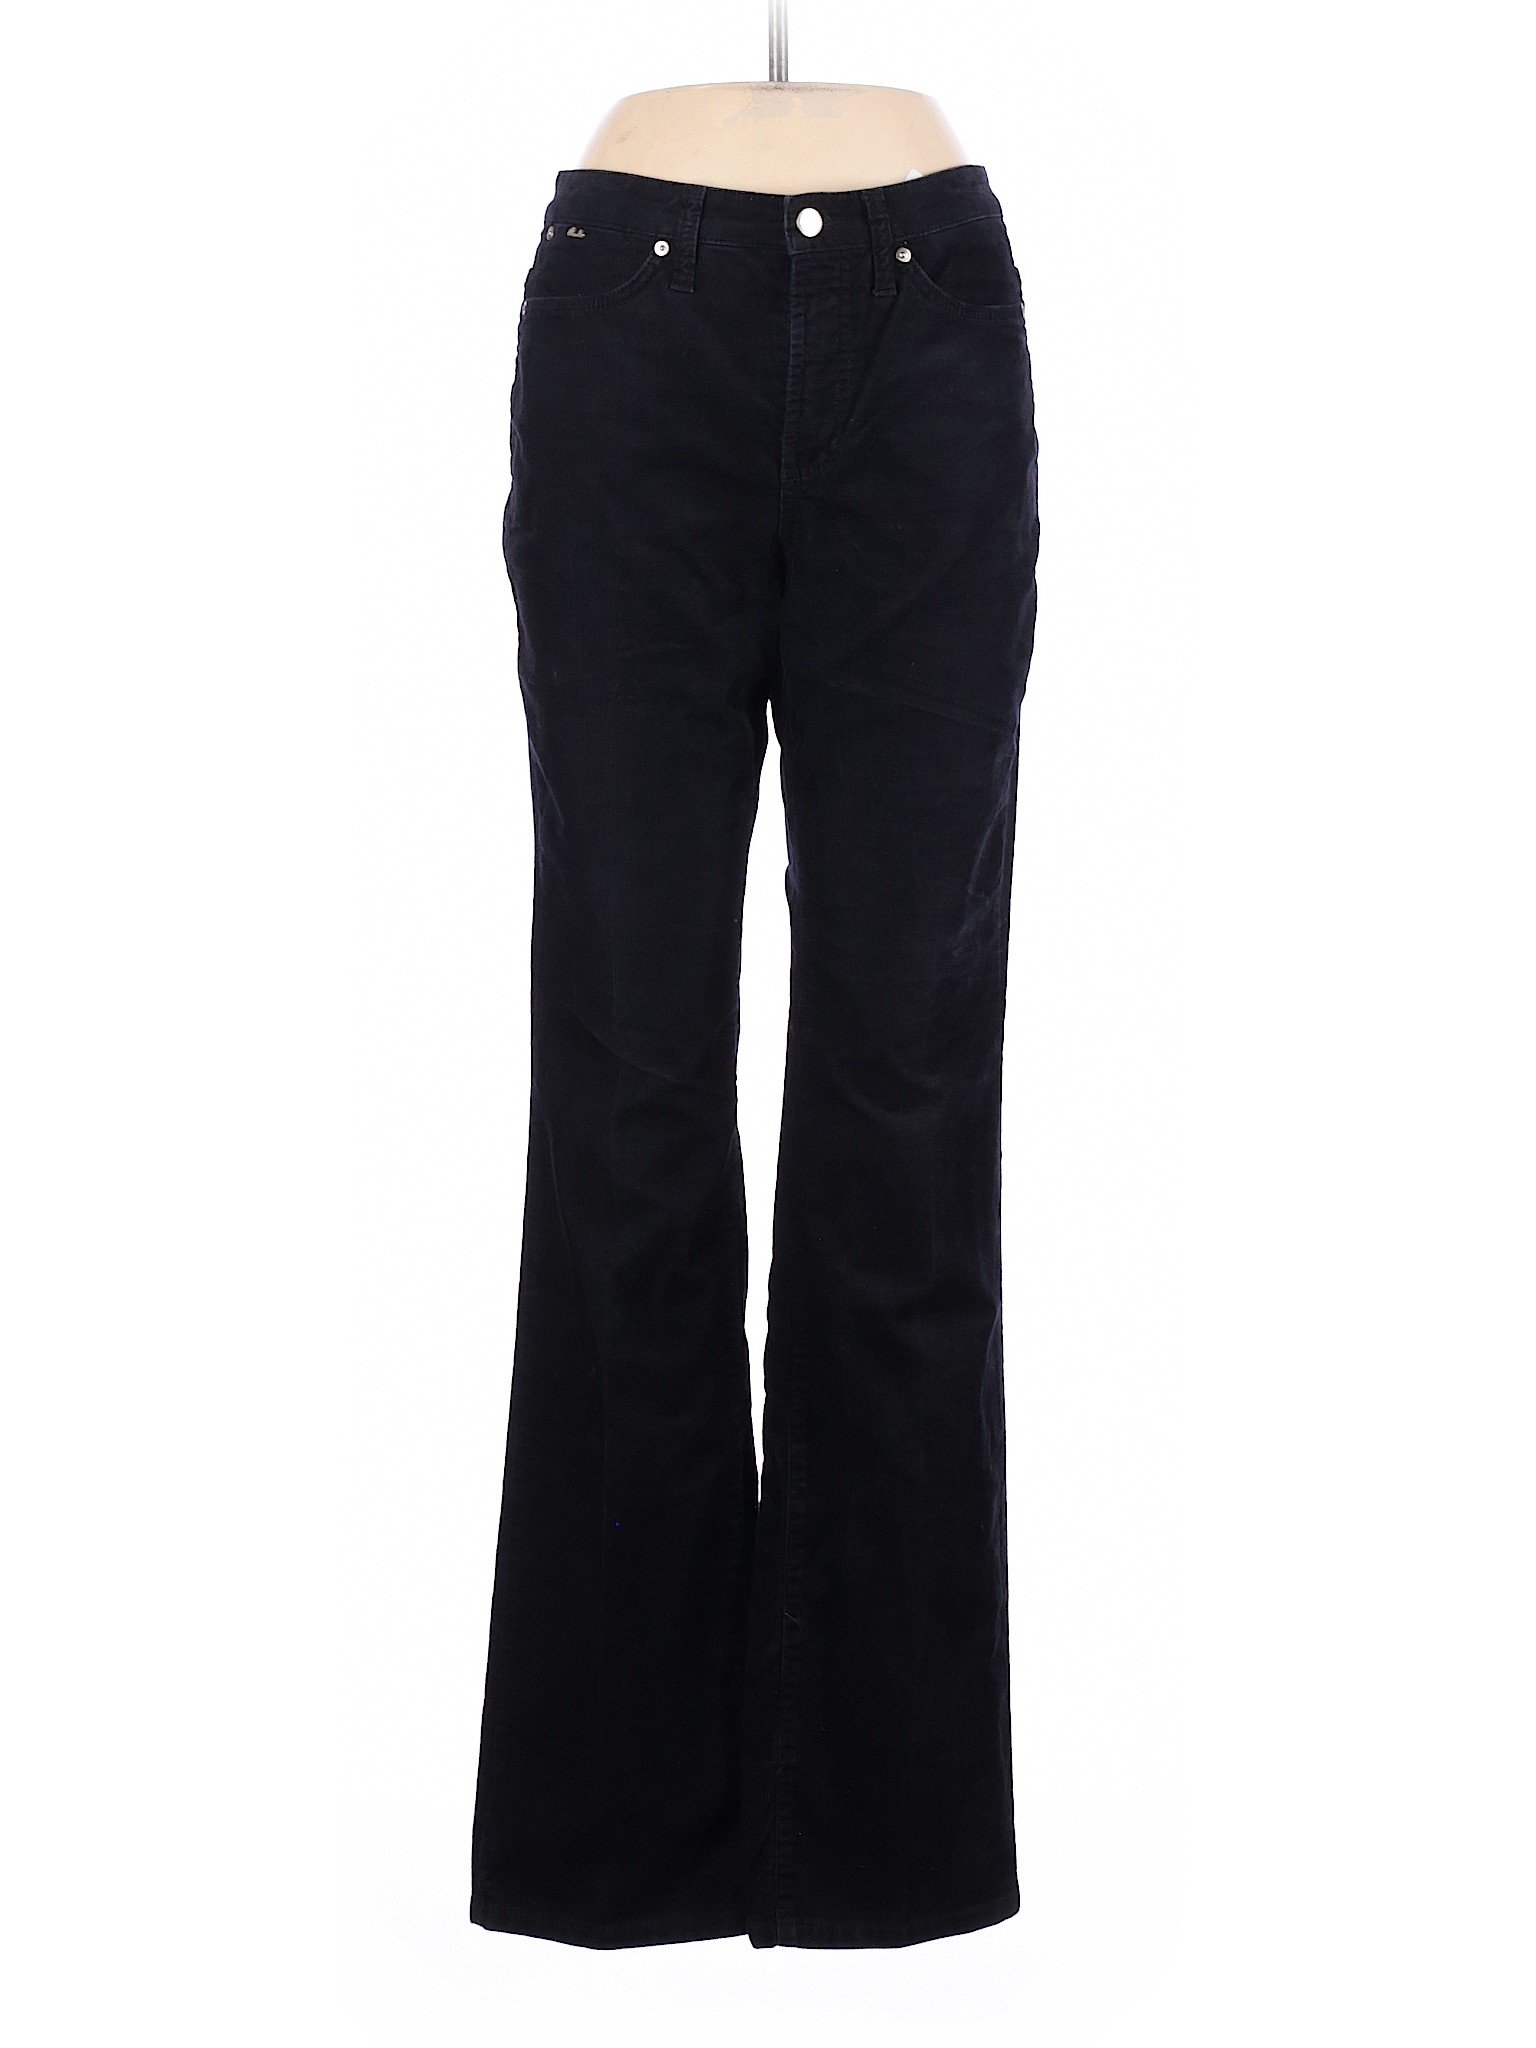 Cambio Jeans Women Black Cords 8 | eBay